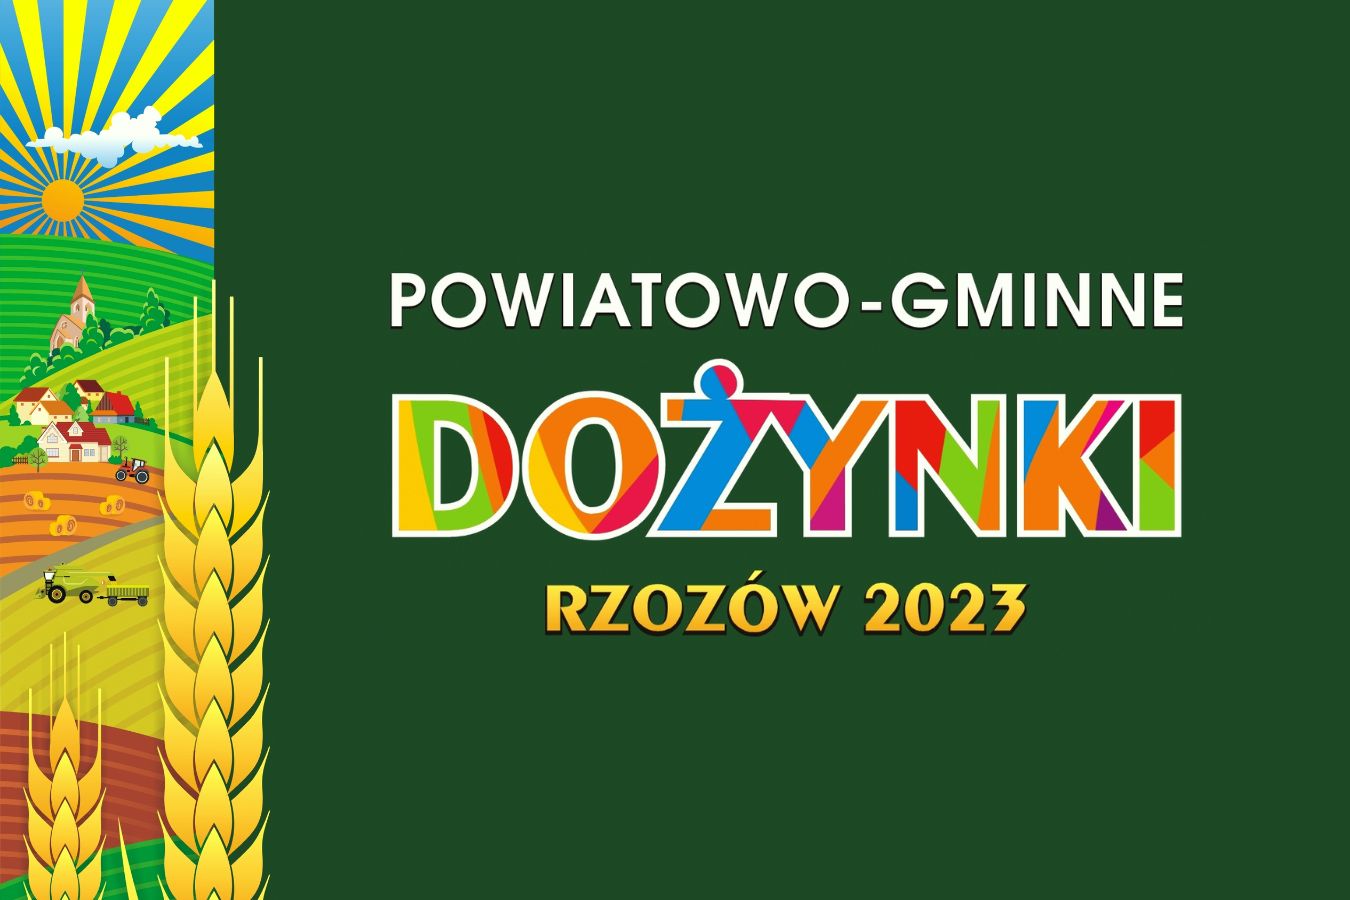 Dożynki Powiatu Krakowskiego w Rzozowie